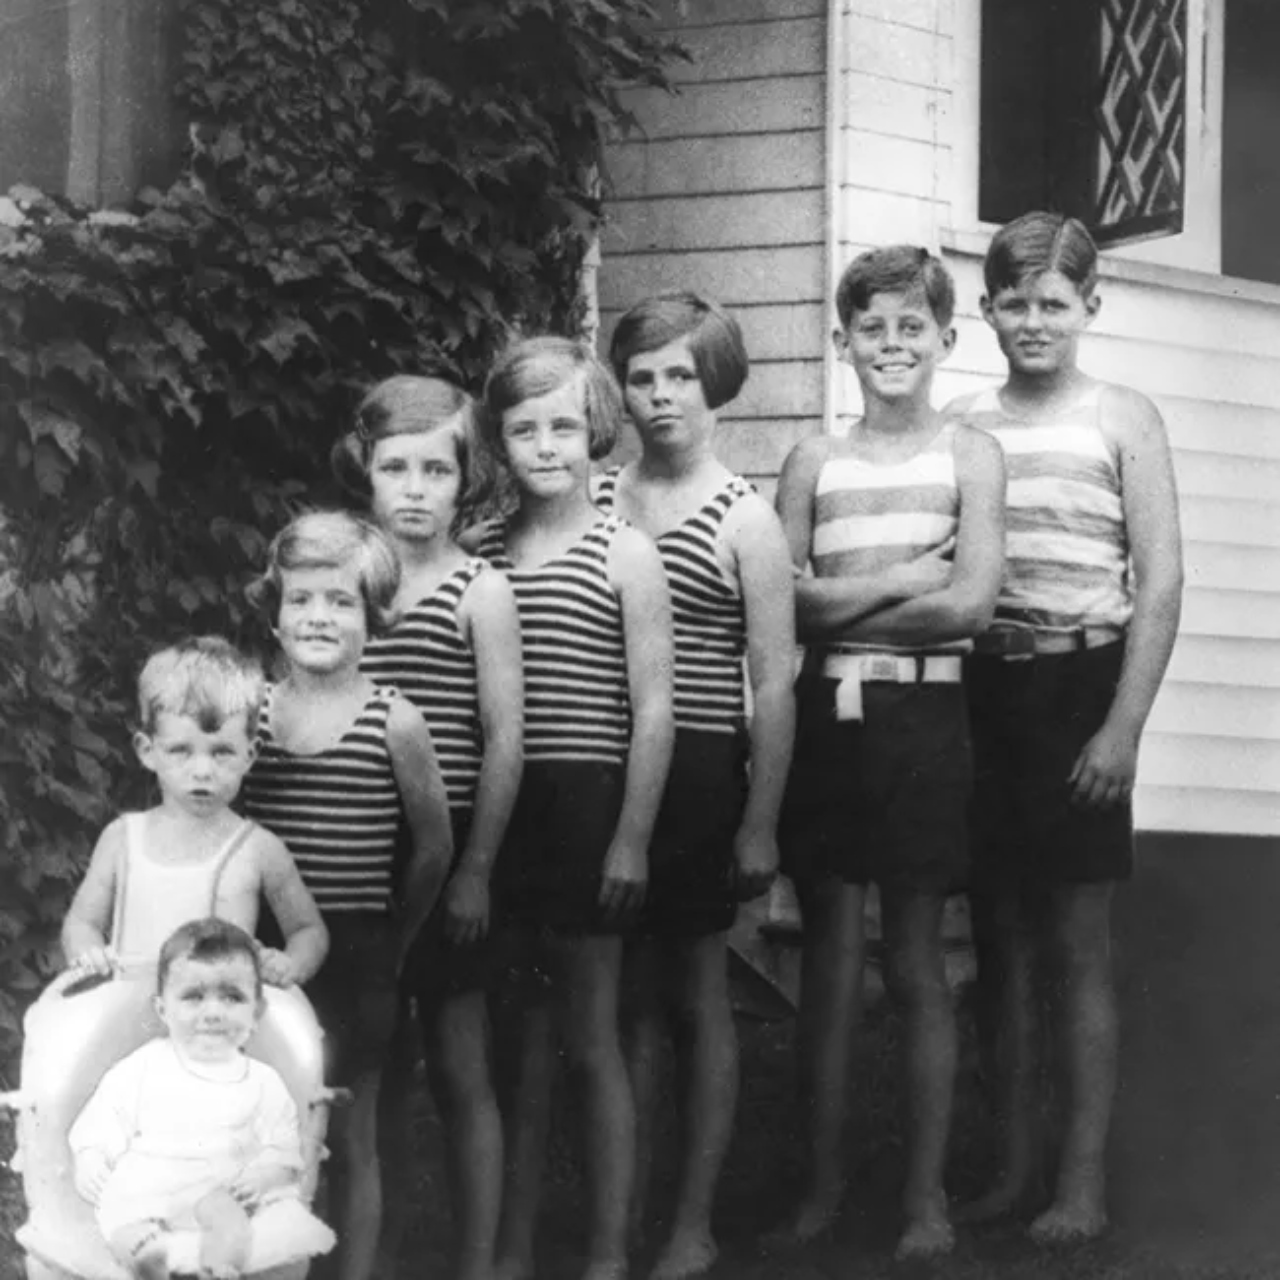 Fotografia com todos os irmãos da família Kennedy quando crianças